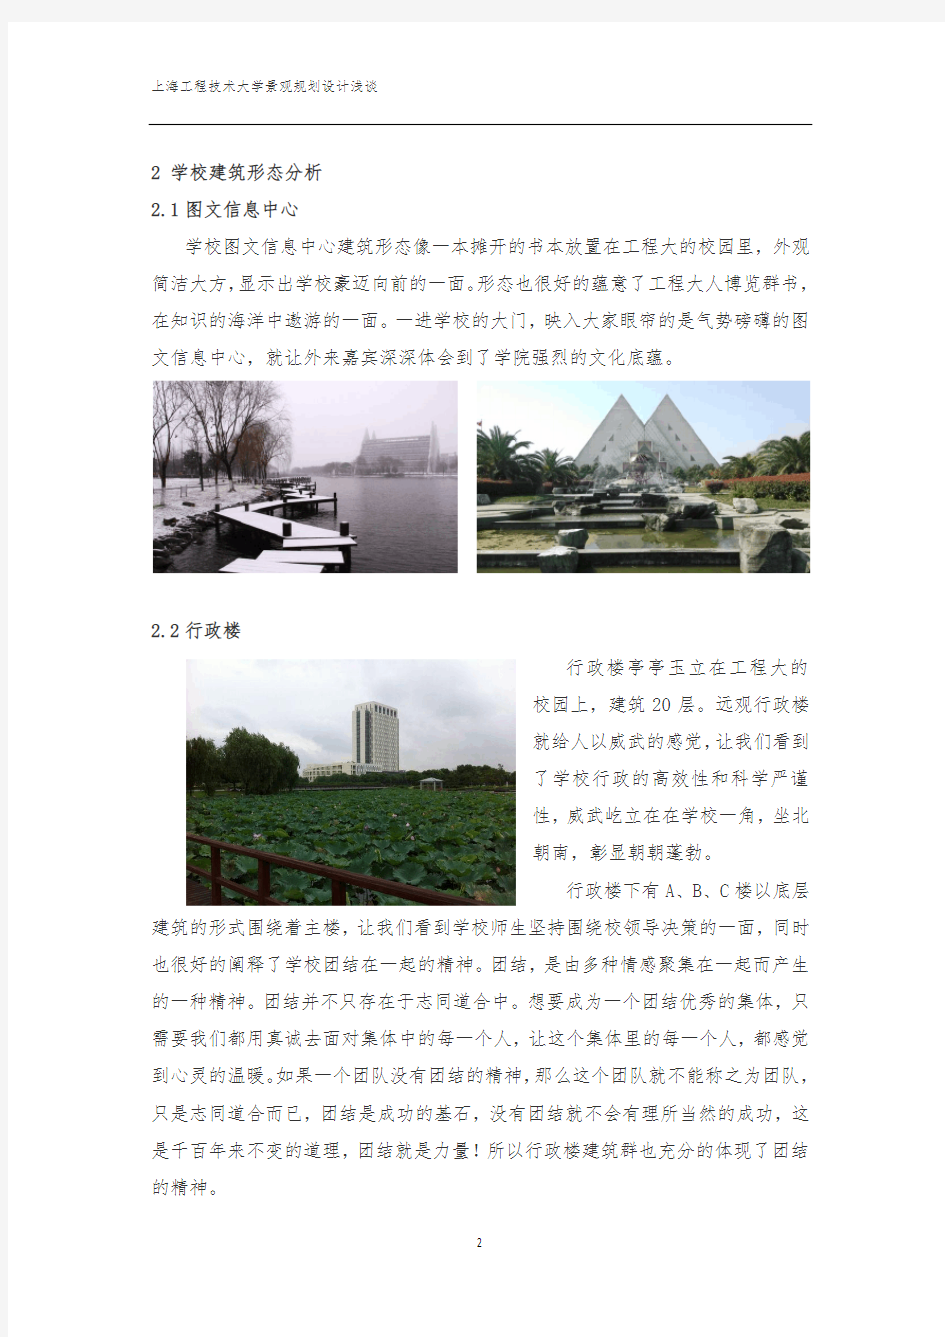 上海工程技术大学景观规划设计浅谈